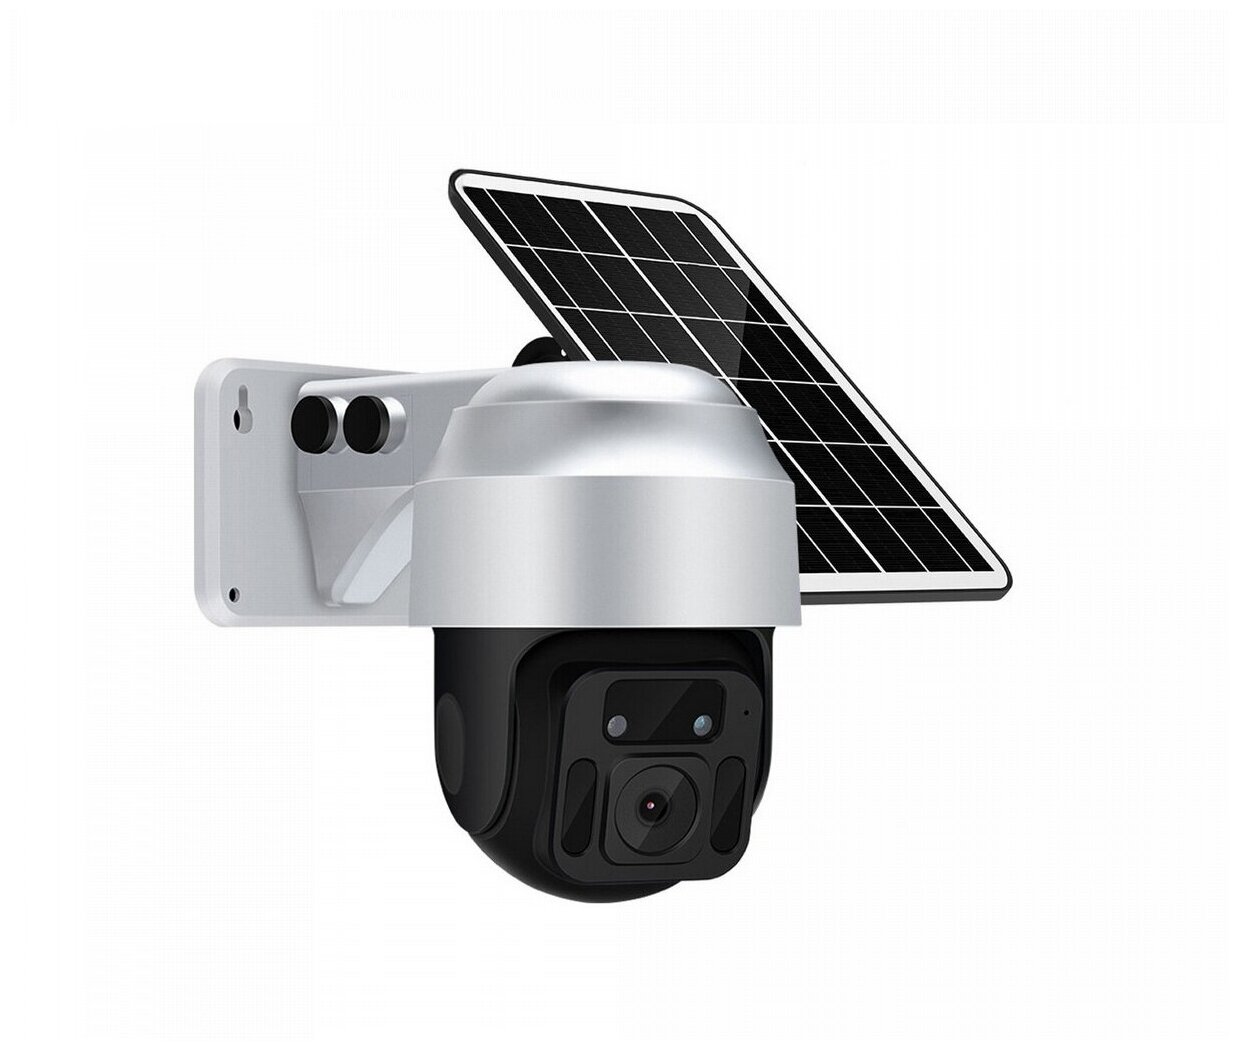 ЛинкСоляр 02 (4GS) (S26134LU) - уличная автономная поворотная 4G-камера с солнечной батареей - 4g ip камера / видеокамера на солнечной батарее